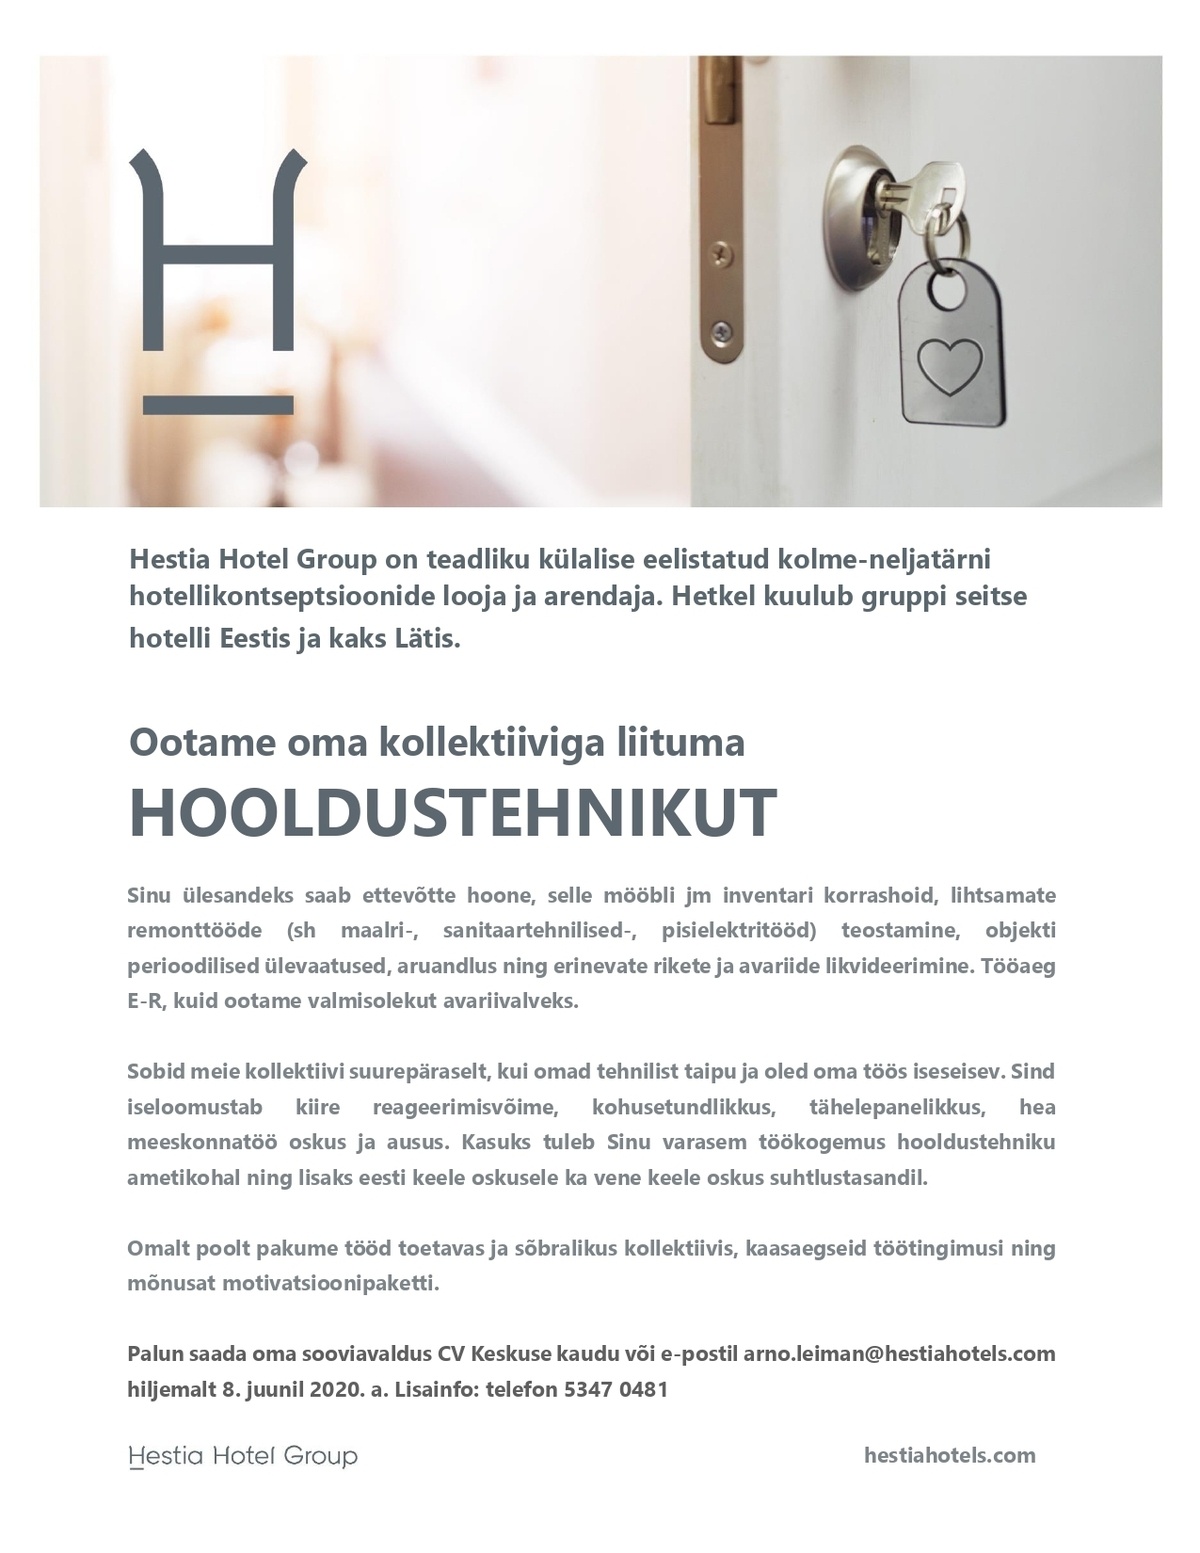 Hestia Hotel Group Hooldustehnik 